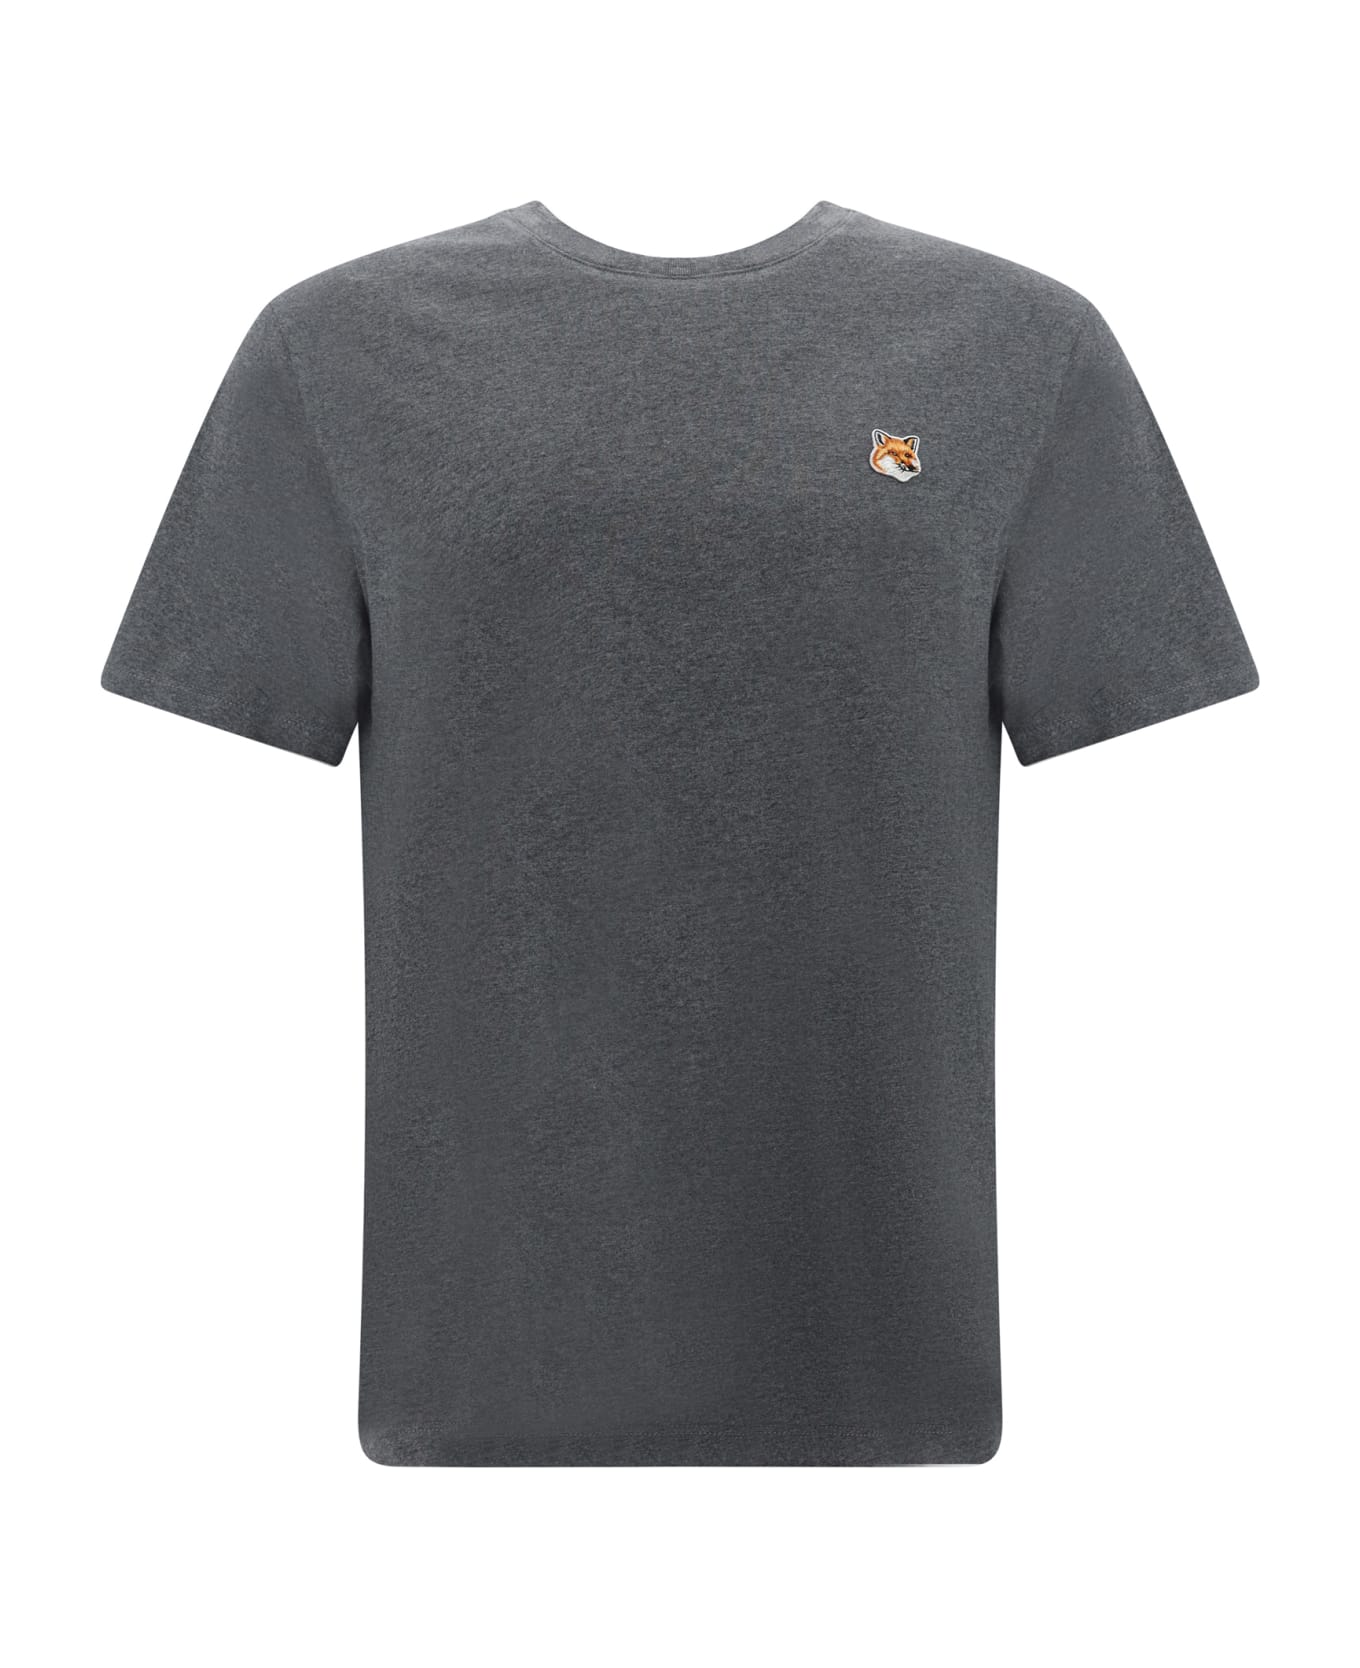 Maison Kitsuné T-shirt - Dark Grey Melenge